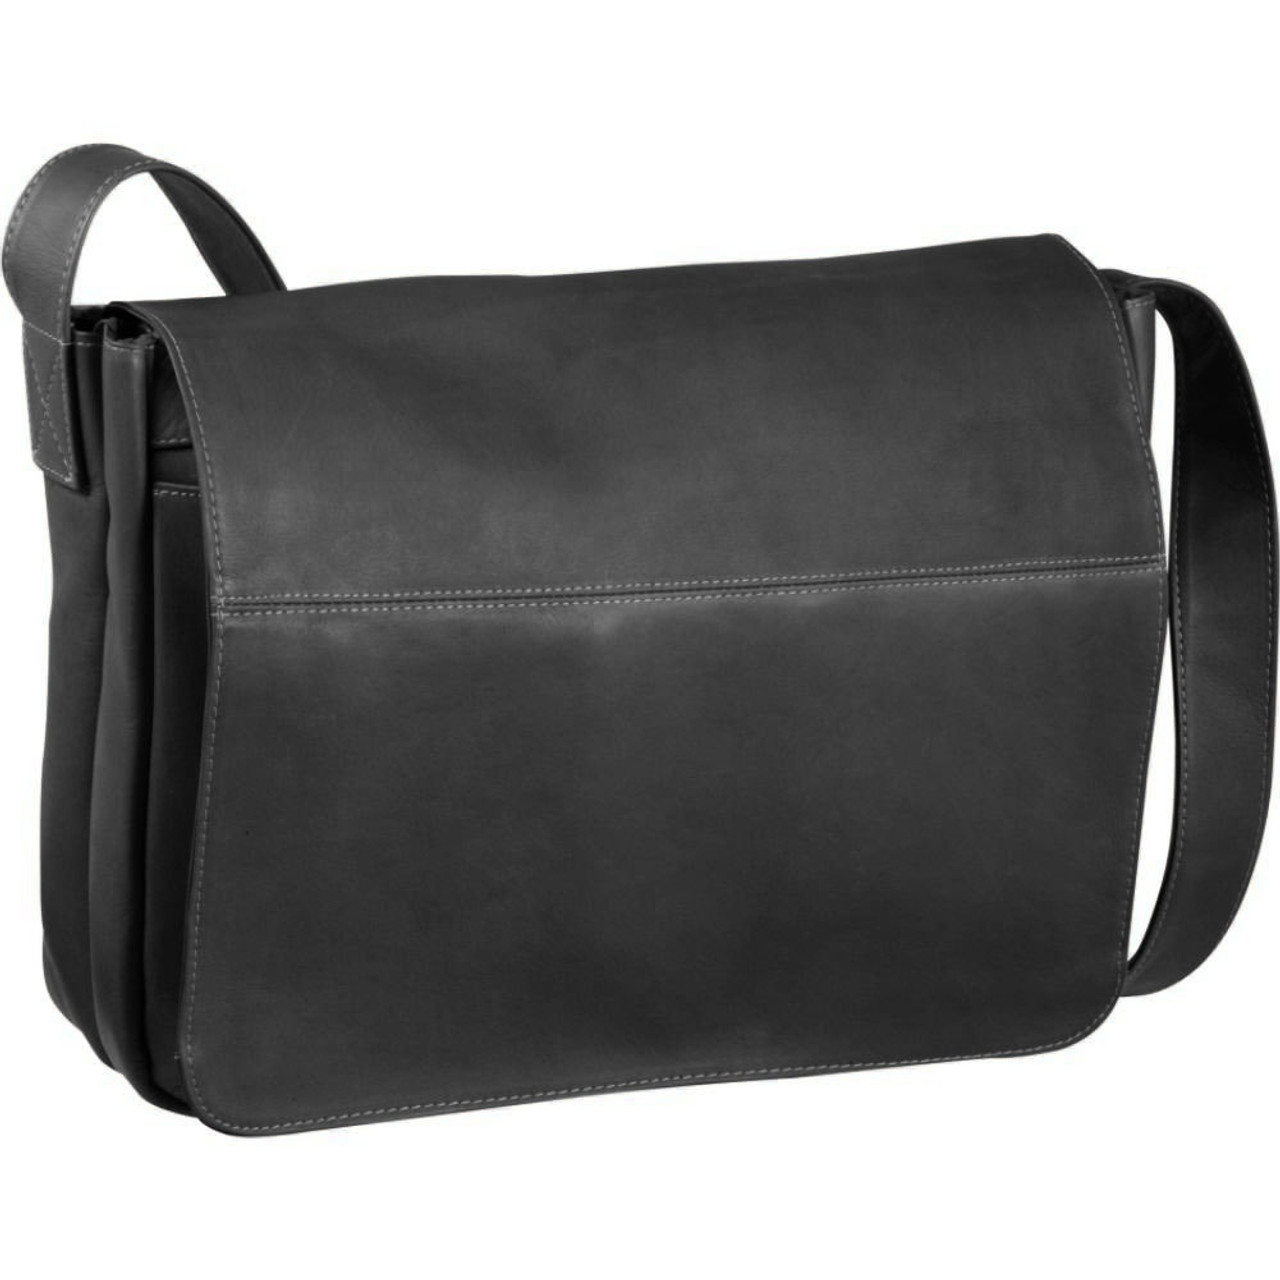 Full Grain Leather Shoulder Bag Black Leather Messenger Bag Casual  Crossbody Bag